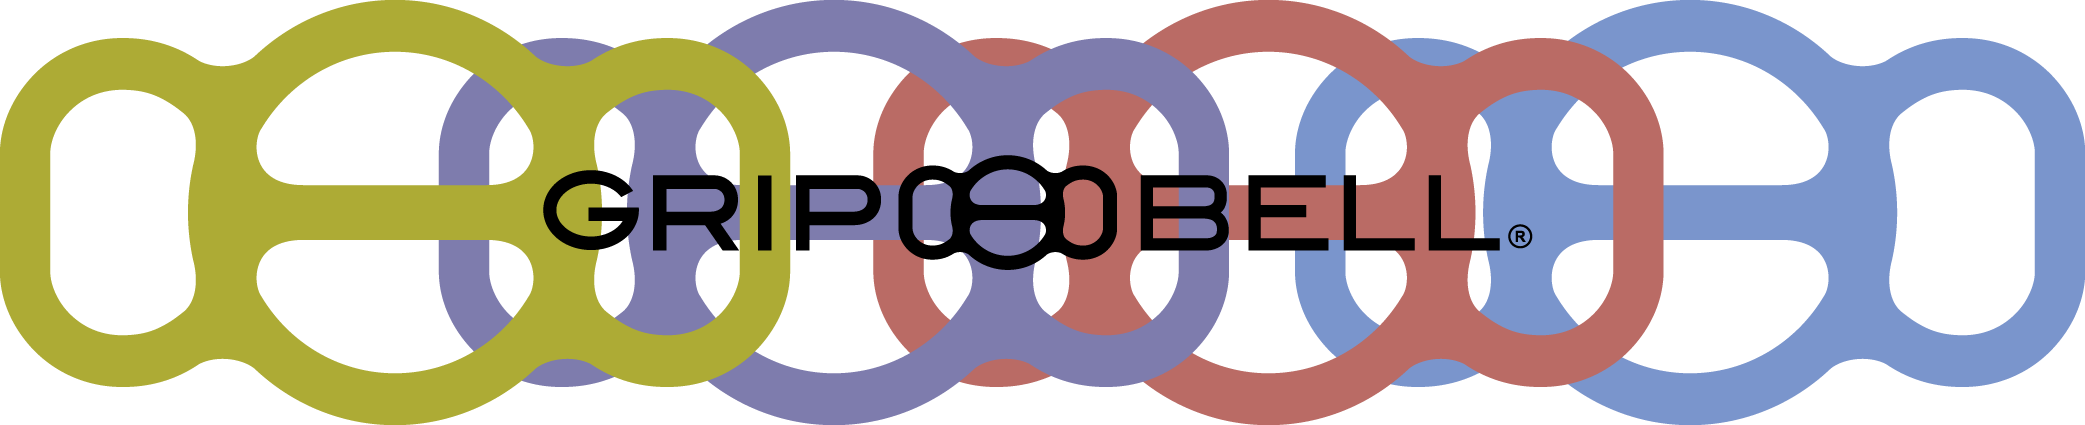 overlay bk logo